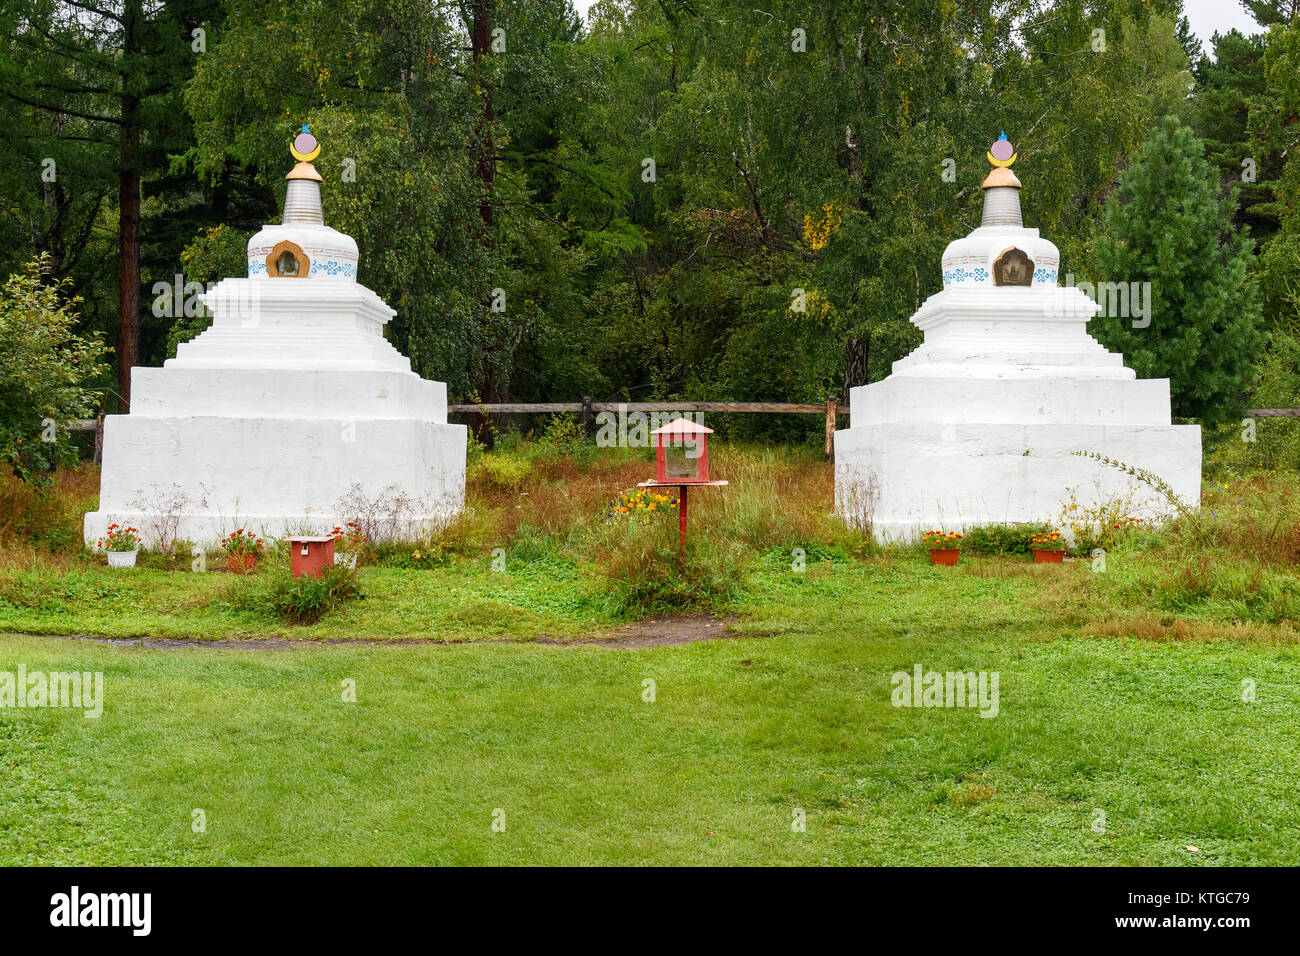 Buddhistische Stupa. Buddhistische datsan Bodhidharma am Fuße des Mundarga Berg von Tunka in Arschan. Burjatien. Russland Stockfoto